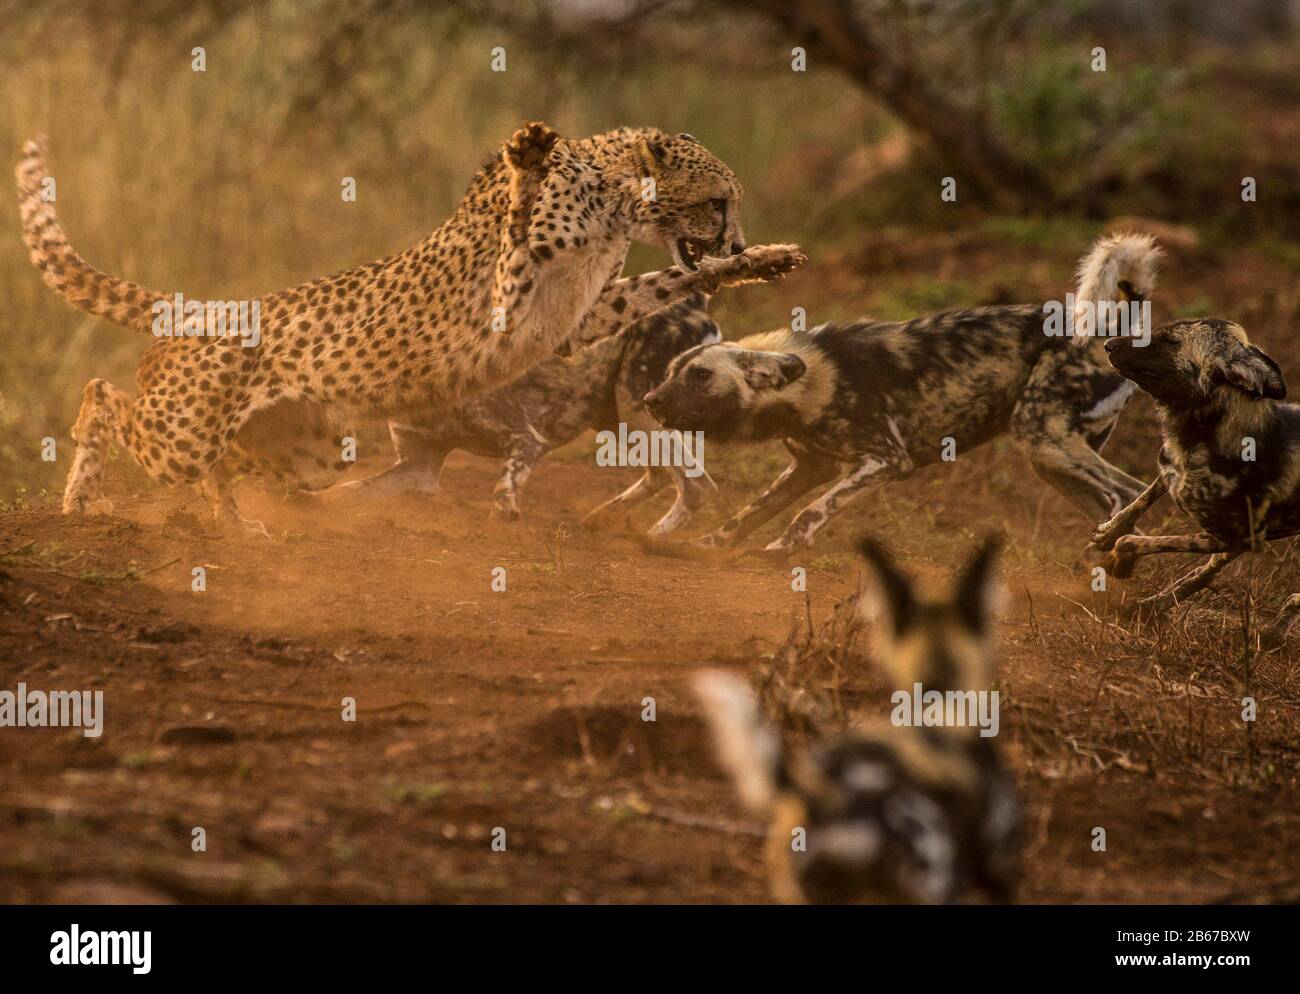 Cette Rencontre entre un Cheetah (Acinonyx jubatus) et un pack de chiens sauvages africains (Lycaon pictus) a été photographiée dans la Réserve de jeux privée de Zimange. Banque D'Images